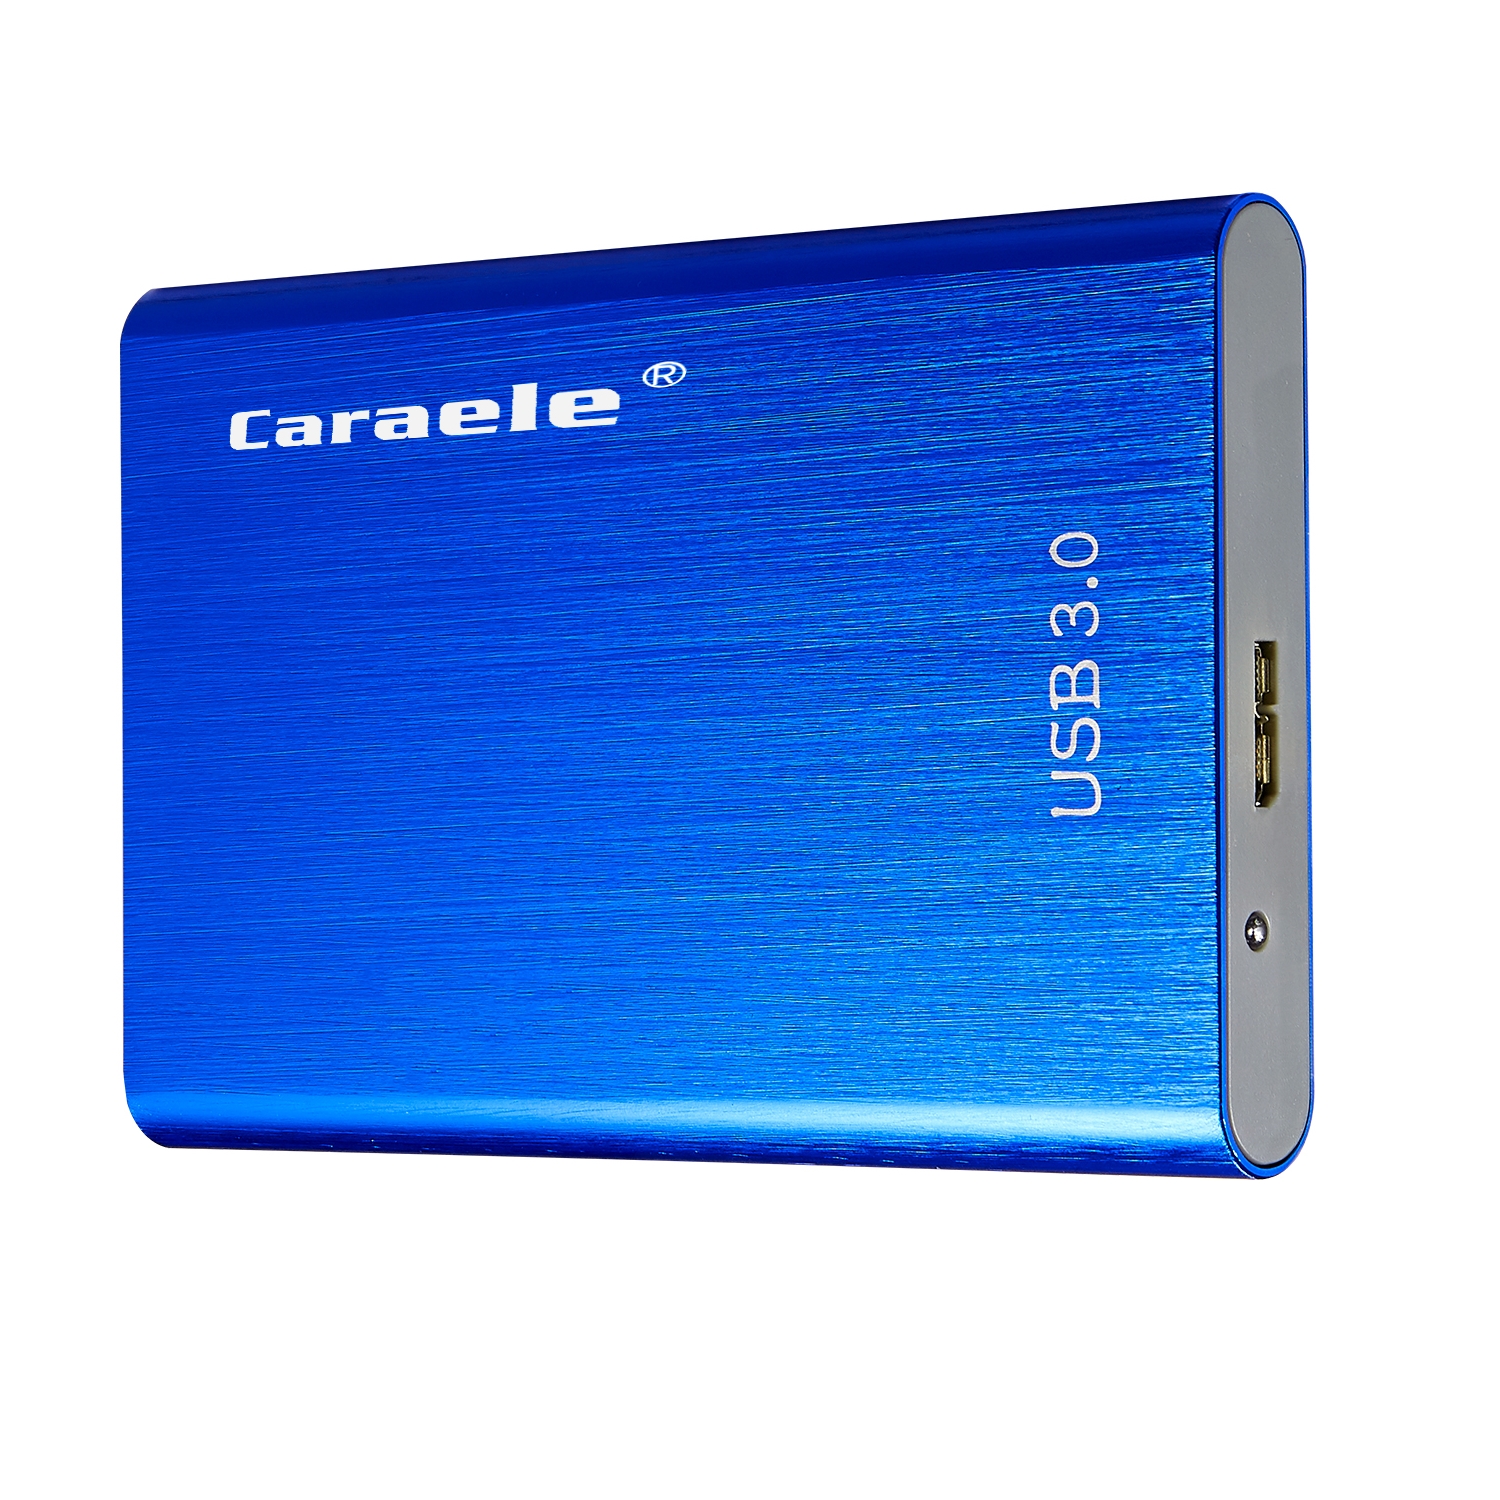 

Мобильный жесткий диск Caraele H-4 USB3.0 Внешний портативный портативный Механический Мобильный жесткий диск для Mac 500 ГБ / 1 ТБ / 2 ТБ-синий